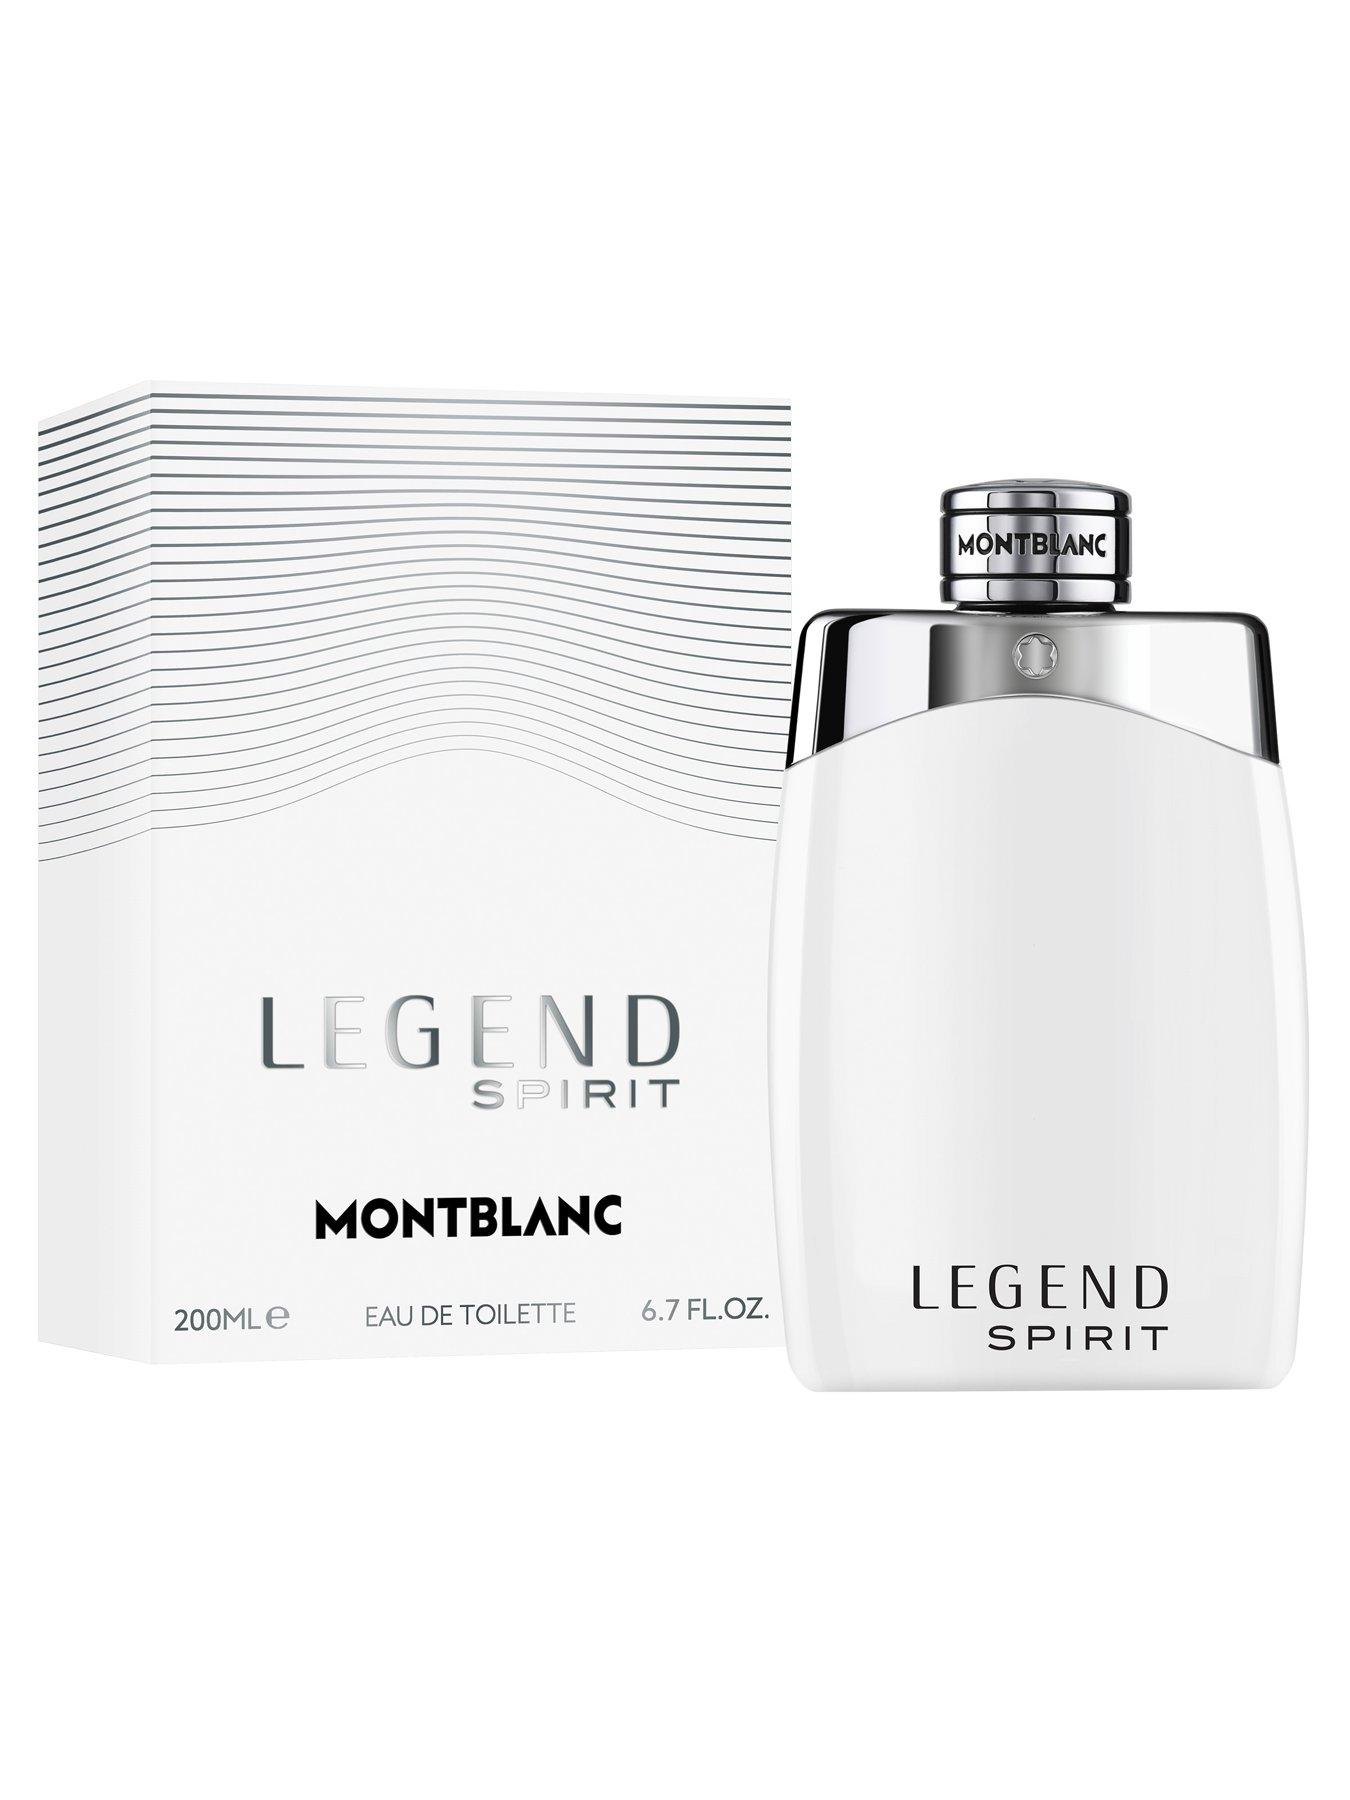 Montblanc Legend Spirit 200ml Eau de Toilette